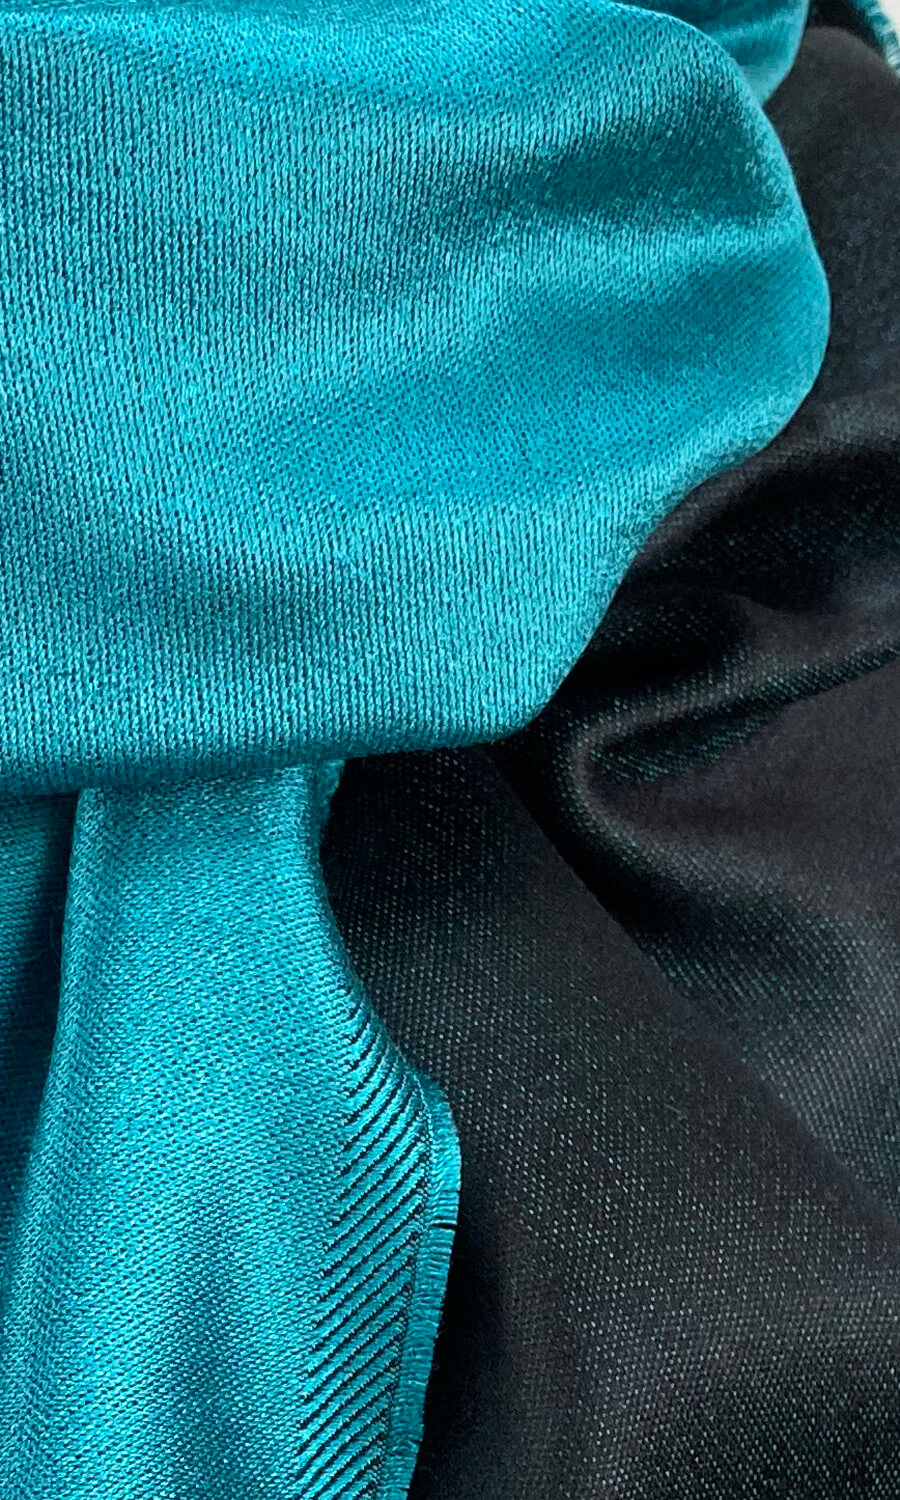 Mohini - großer zweifarbiger Schal aus reiner Seide